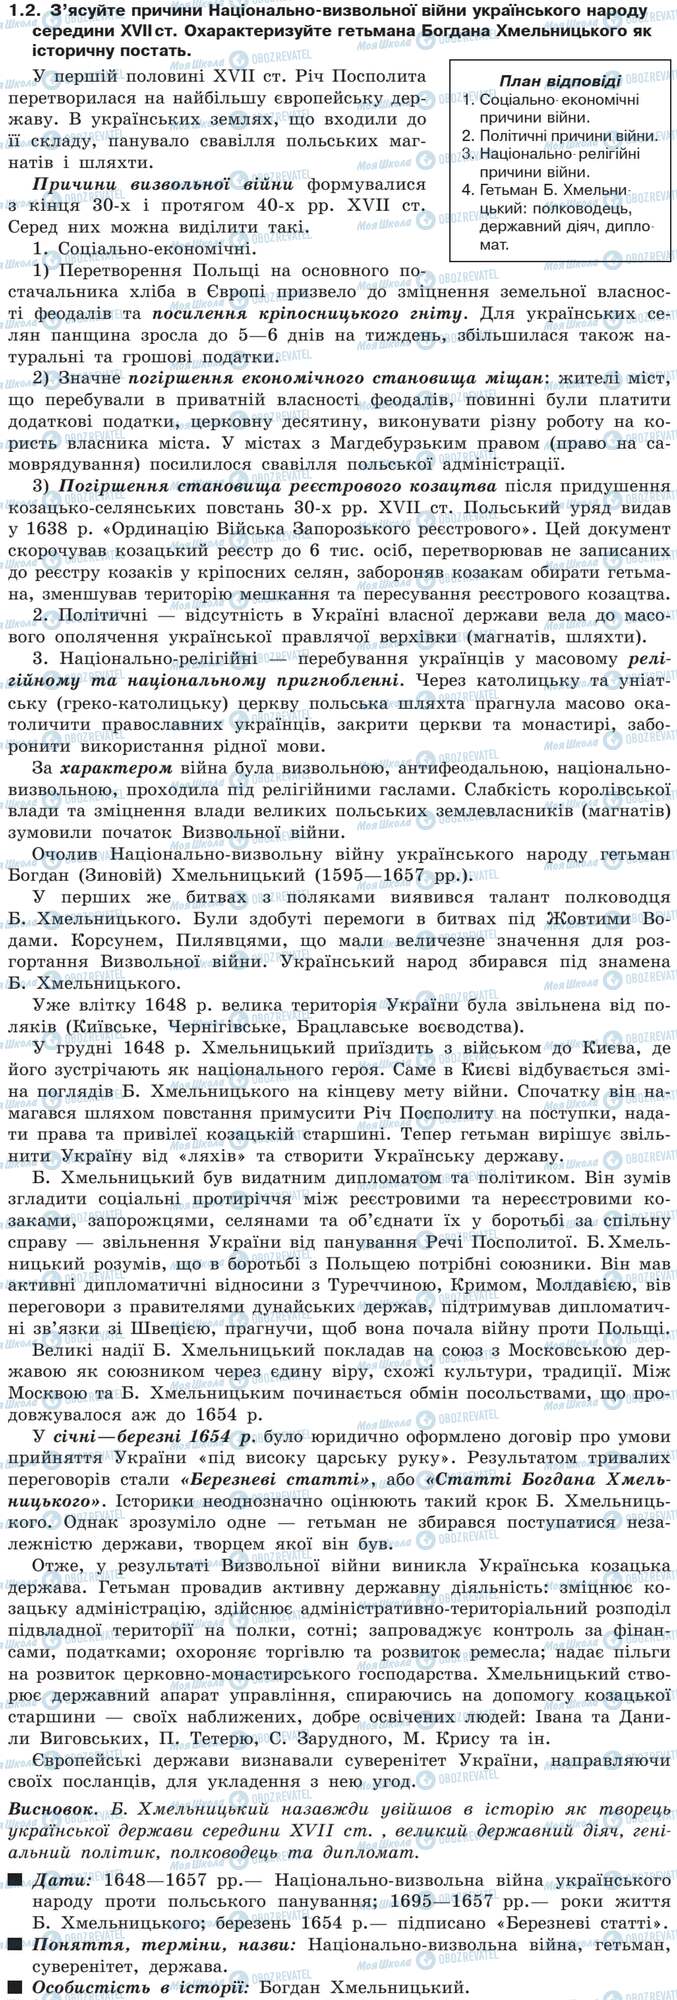 ДПА Історія України 9 клас сторінка 1.2